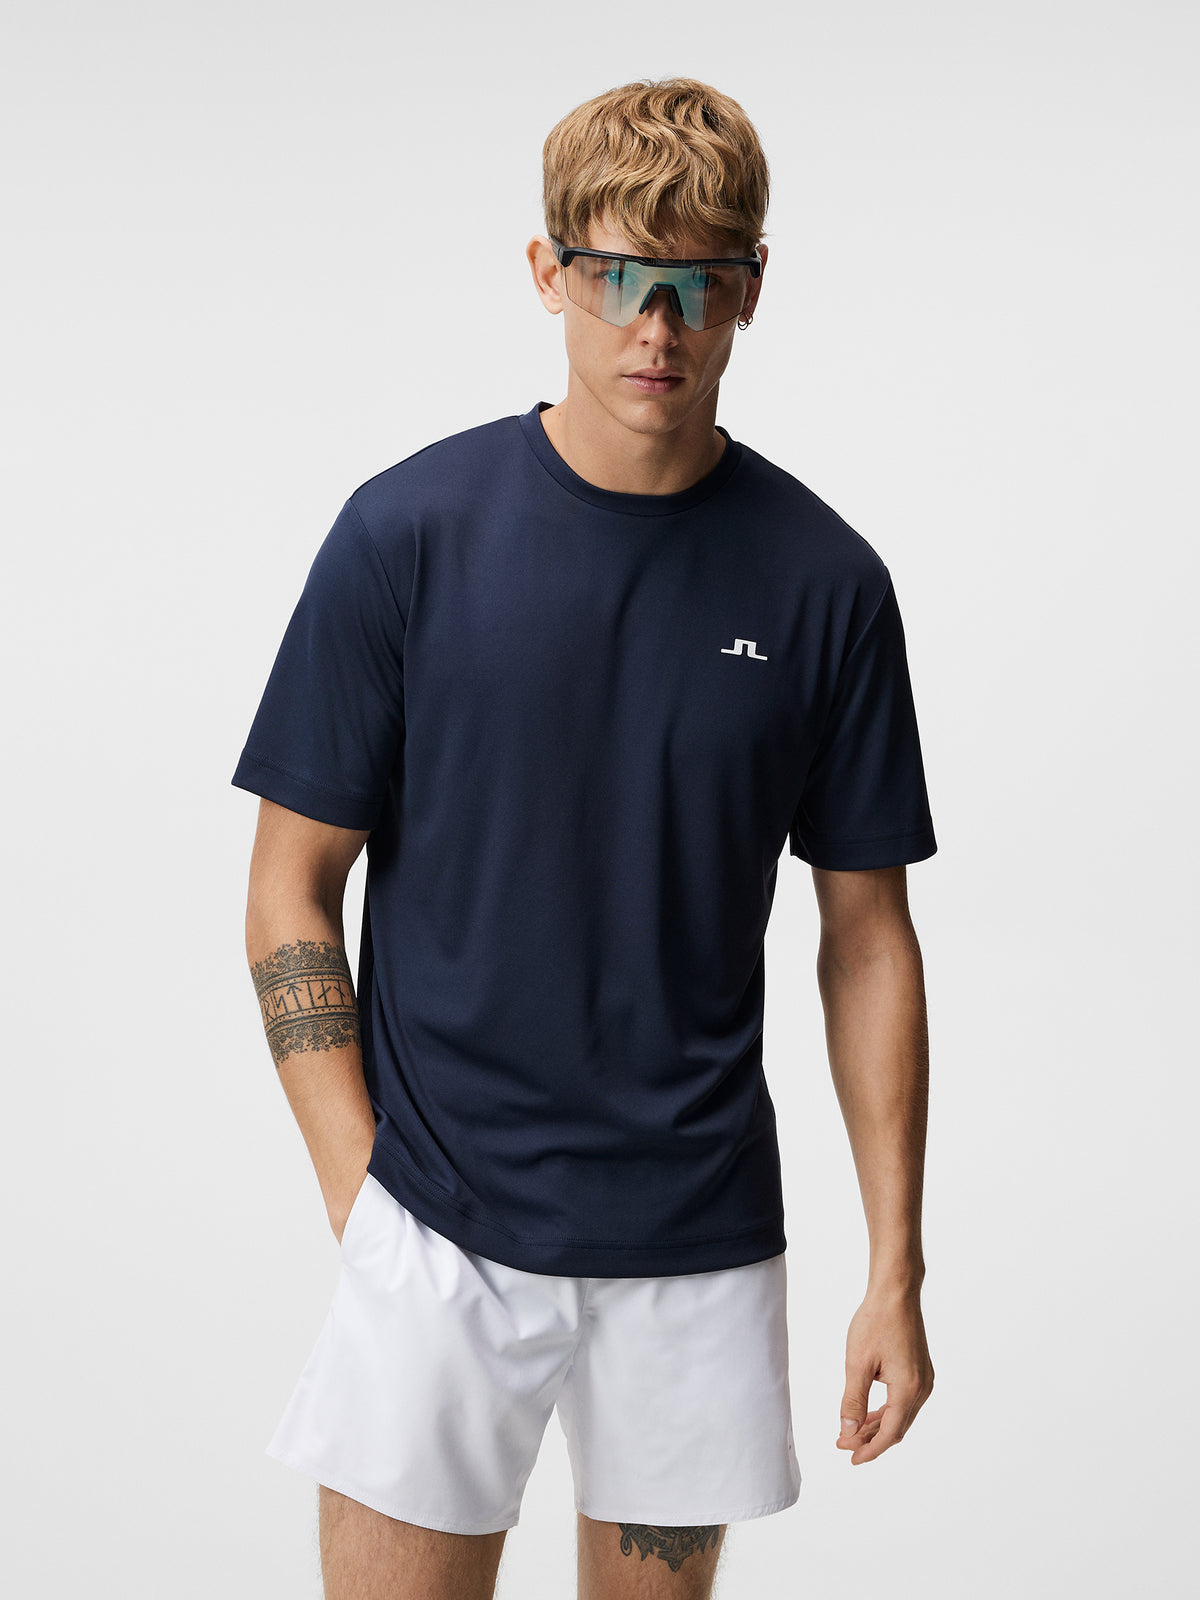 Ade T-shirt / JL Navy